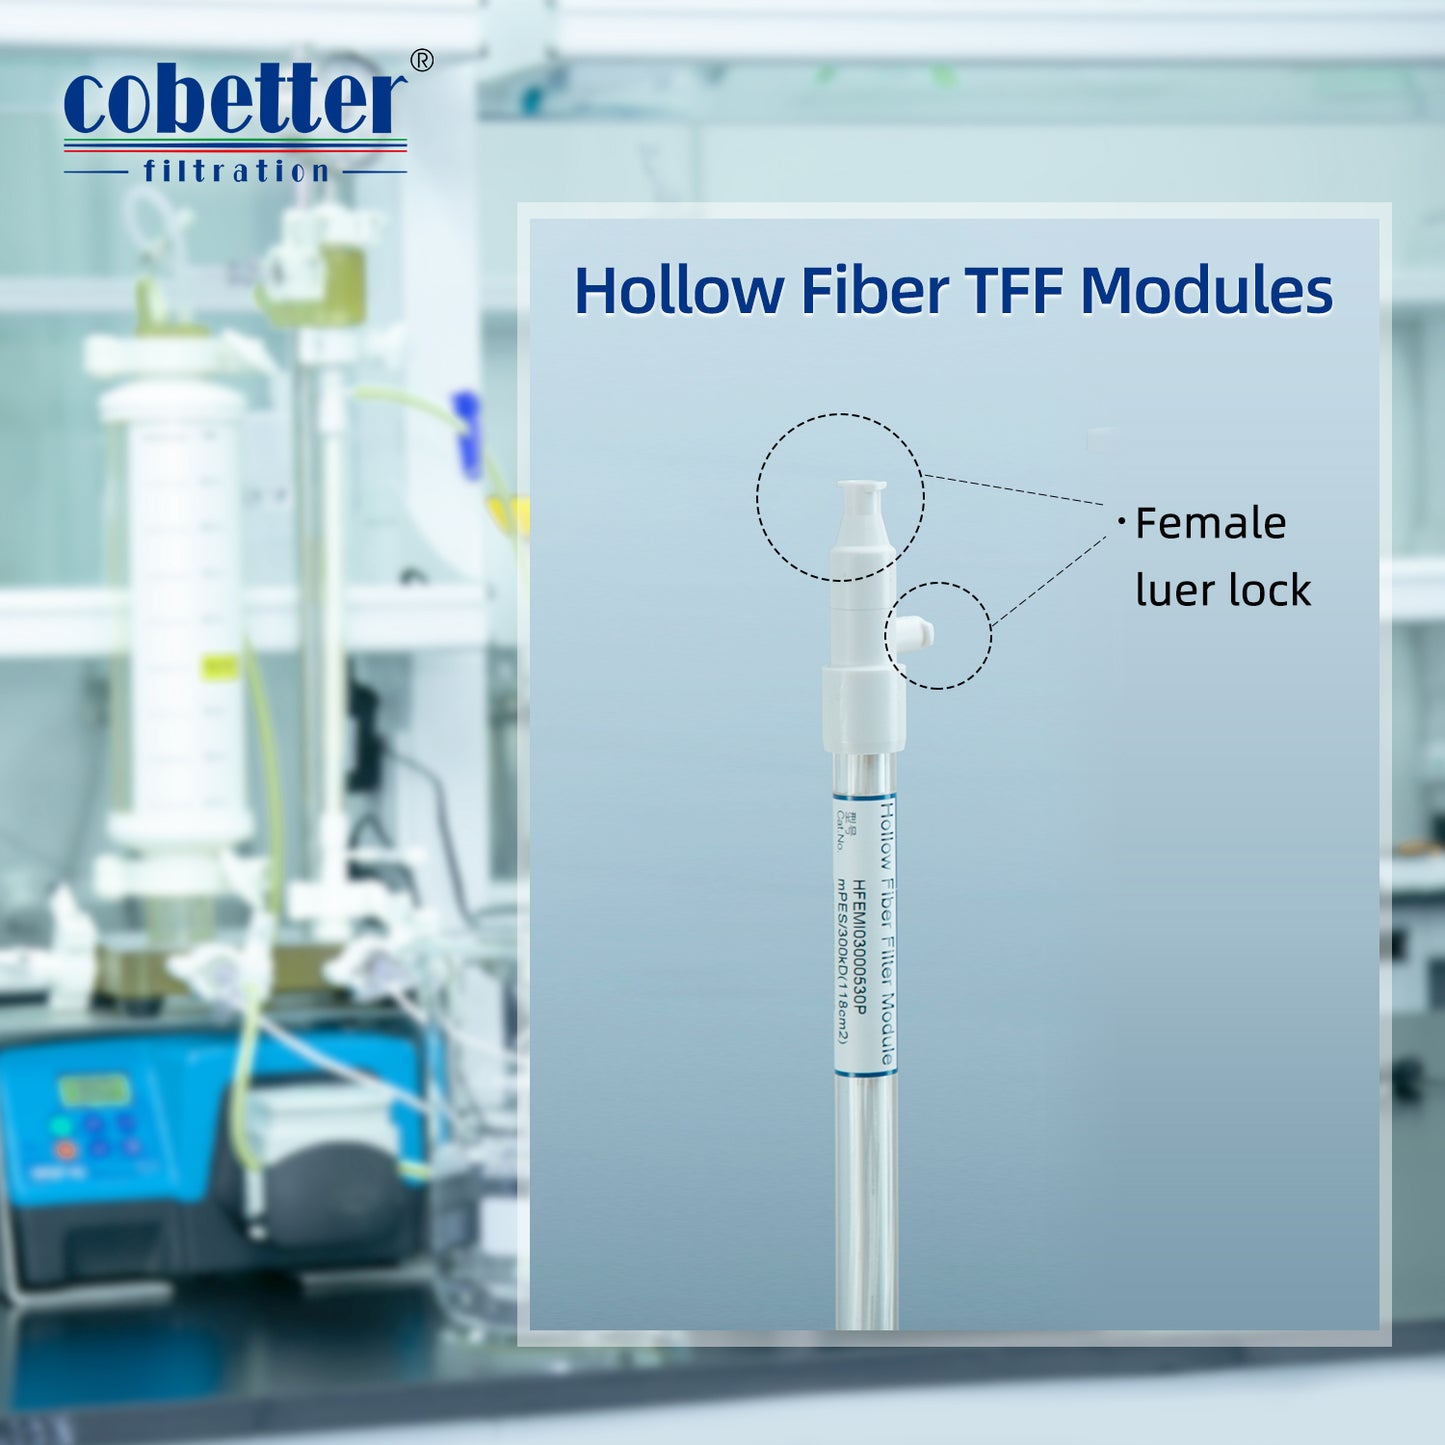 COBETTER 0.5mm Process Hollow Fiber TFF, mPES